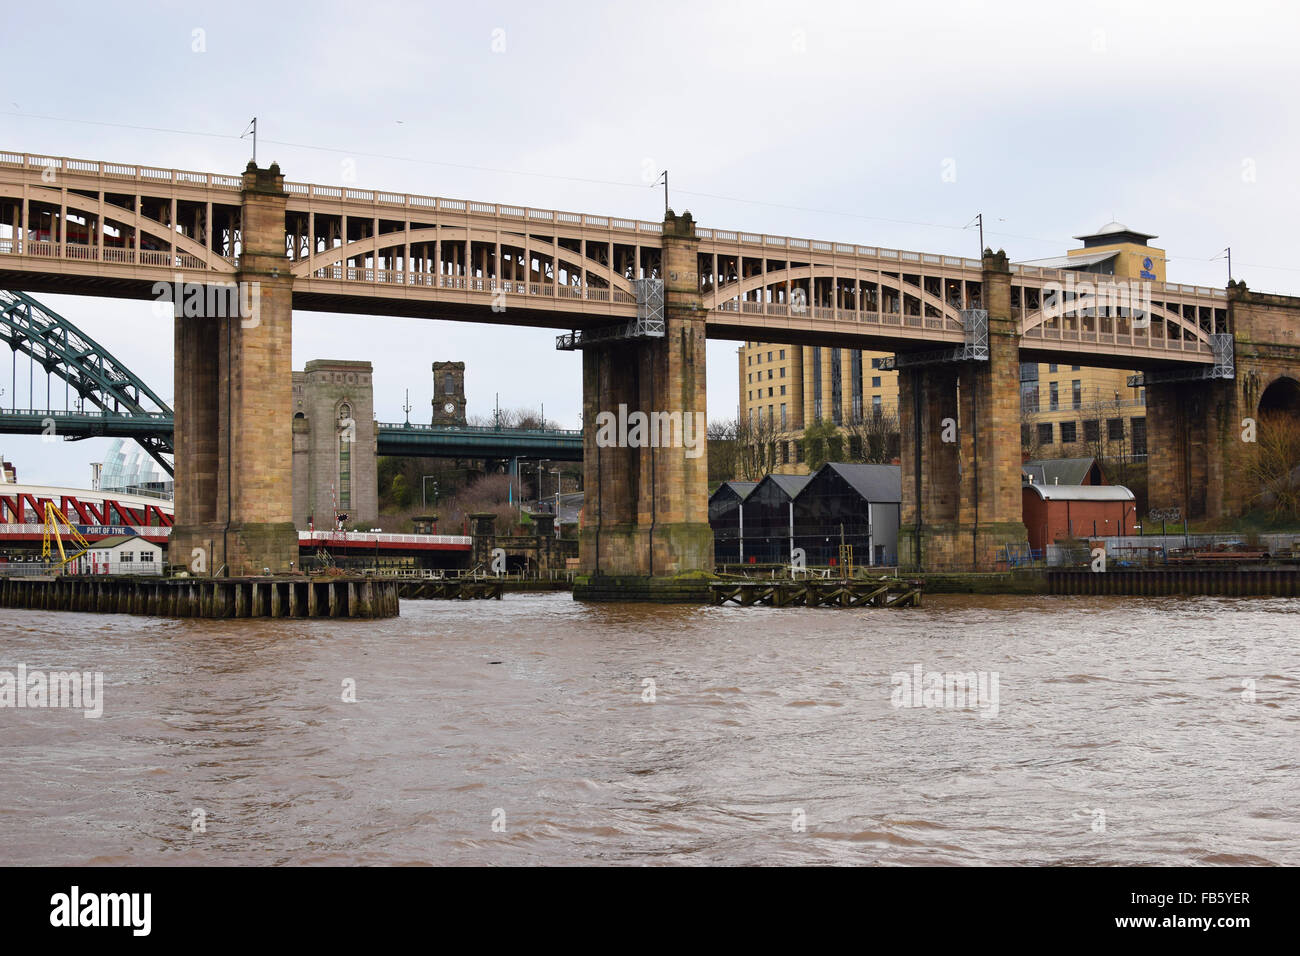 Le High Level Bridge, sur la rivière Tyne, entre Newcastle et Gateshead. Banque D'Images